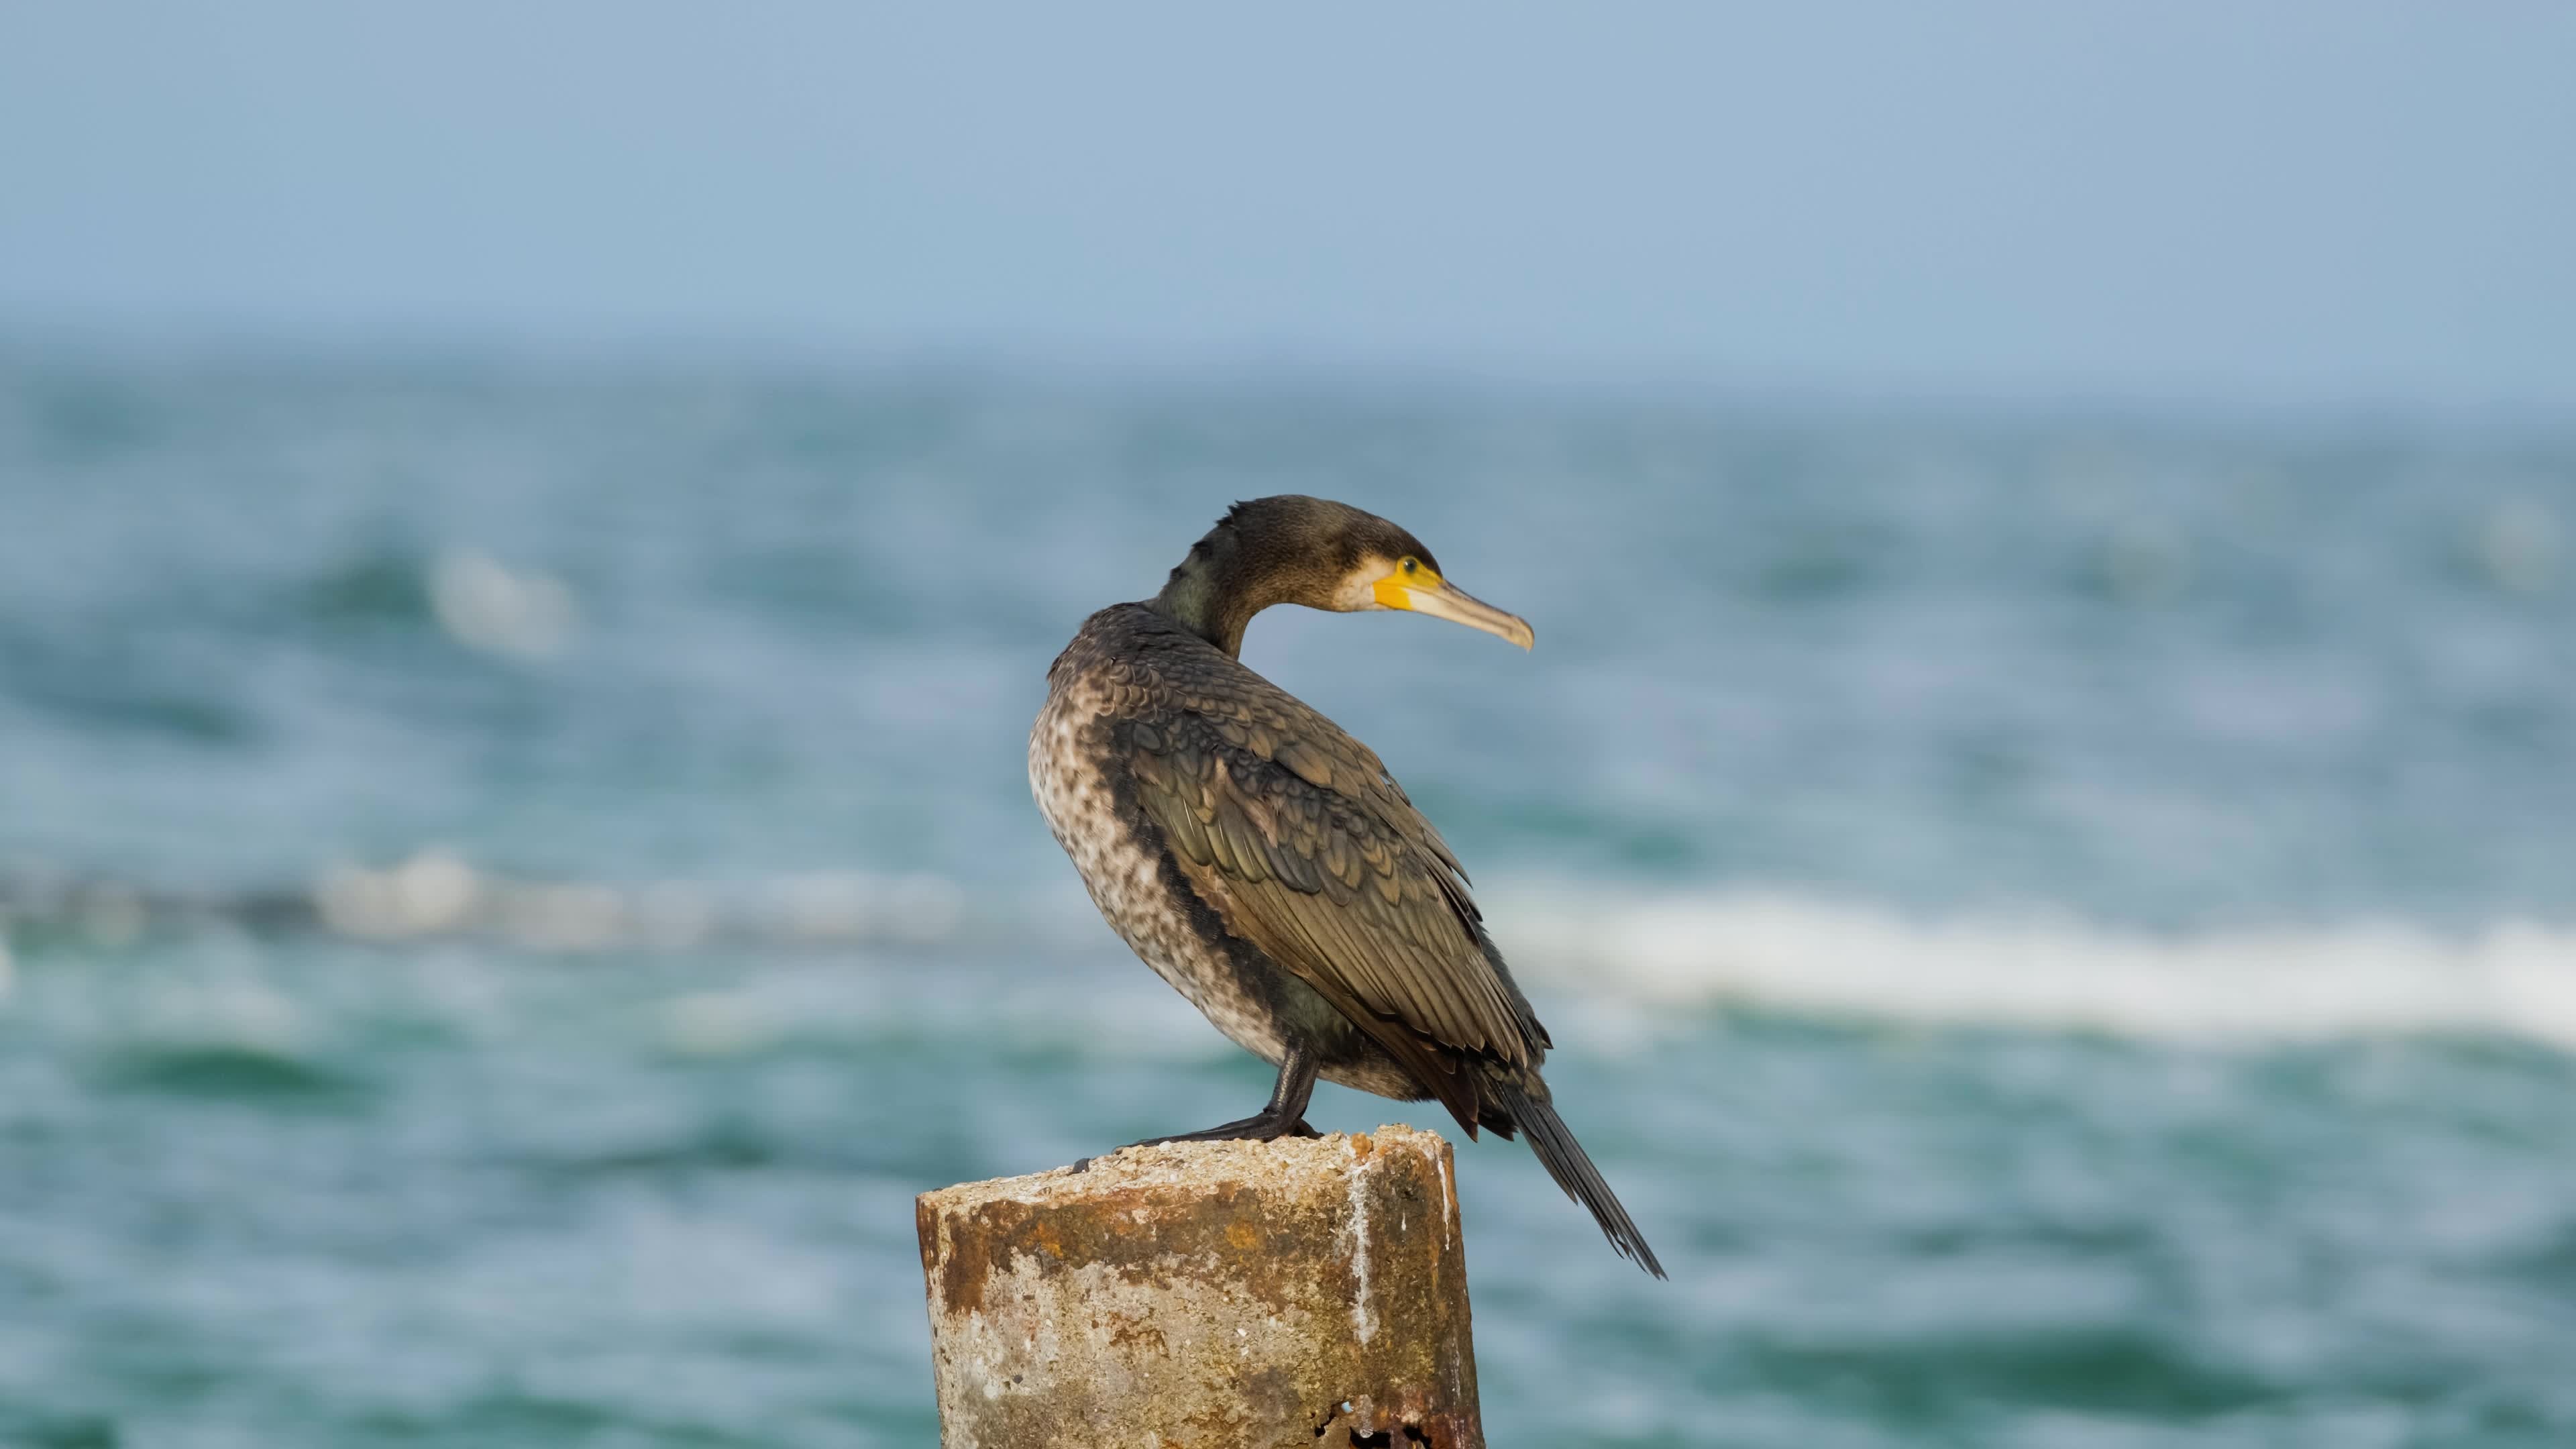 Black cormorant against sea backdrop, Nature's contrast, Avian beauty, Majestic scenery, 3840x2160 4K Desktop